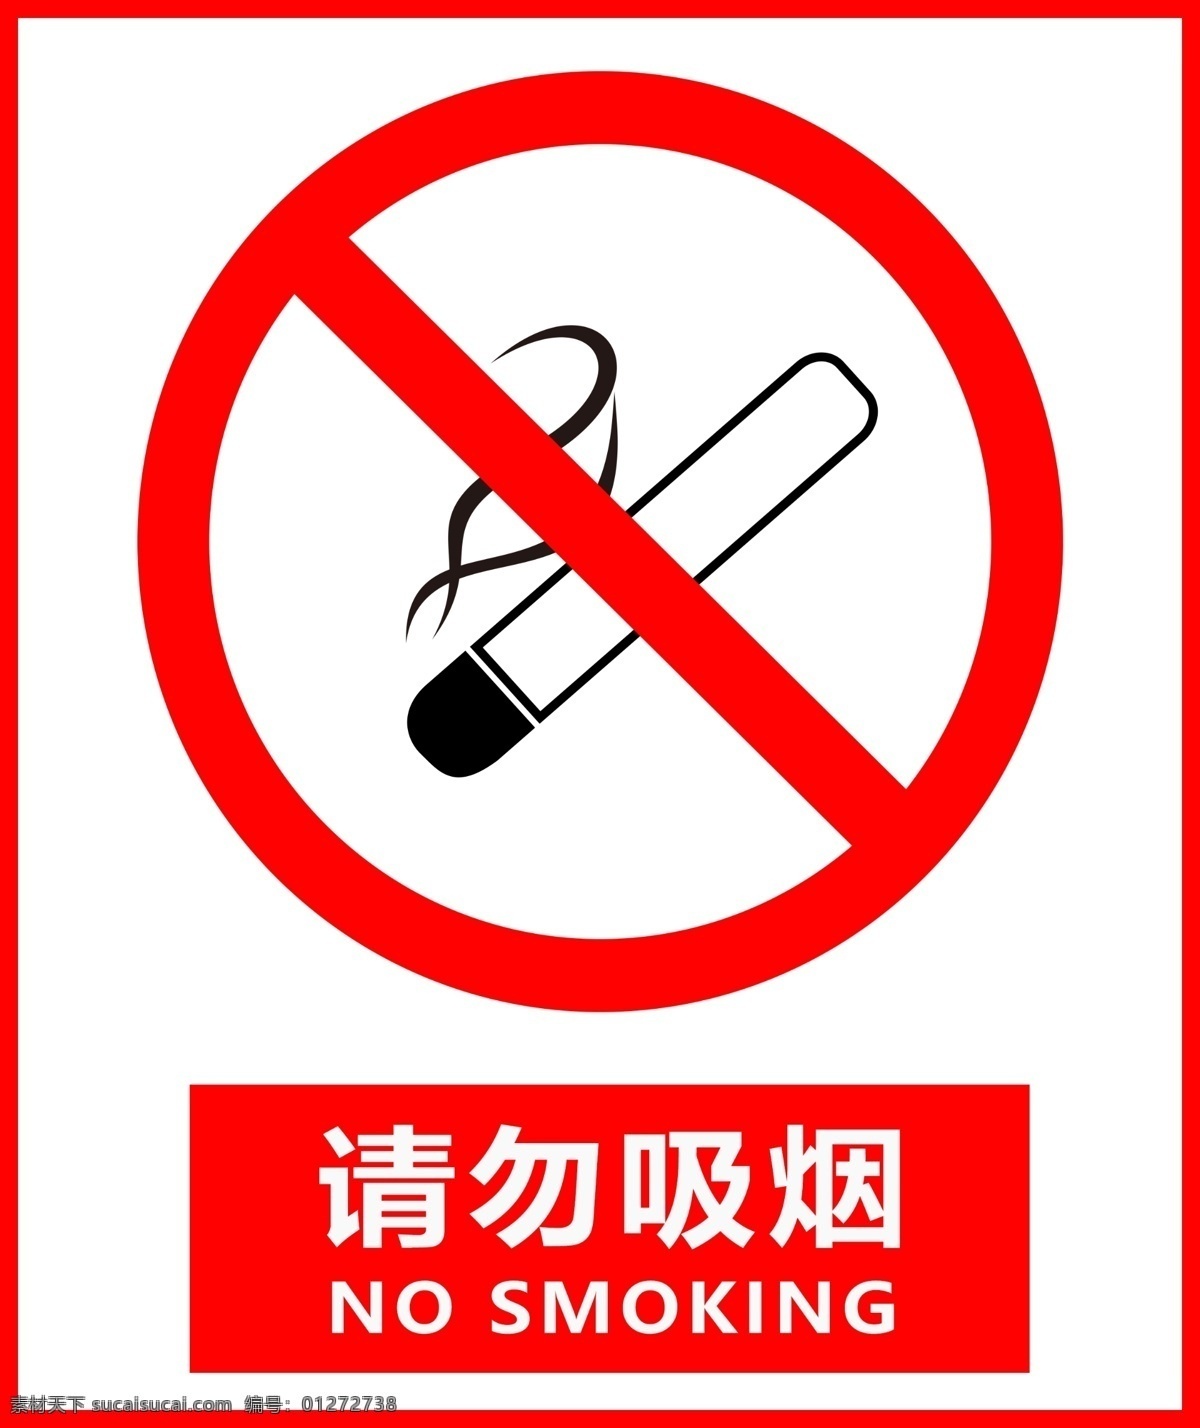 禁止吸烟 禁止吸烟标志 禁止吸烟样式 禁止吸烟模版 禁止吸烟牌 温馨提示标牌 温馨提示 请勿吸烟标志 请勿吸烟样式 请勿吸烟模版 请勿吸烟牌